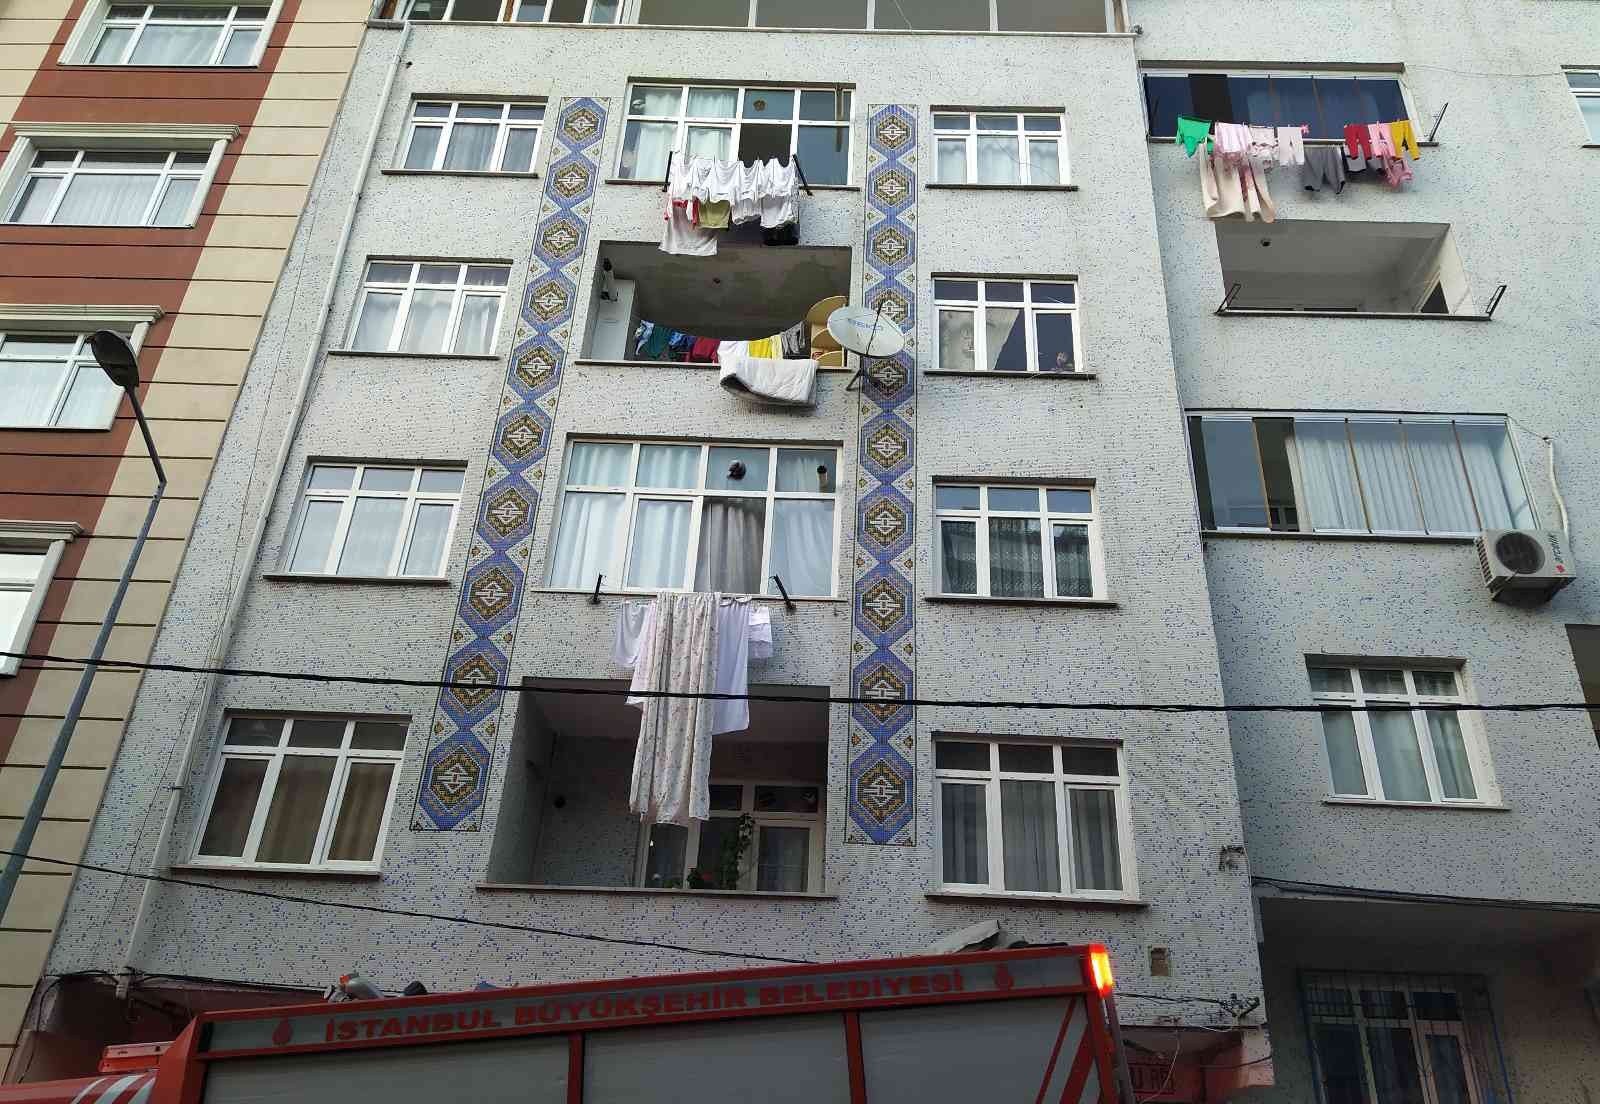 Anne kart almaya gitti, çocuklar evde mahsur kaldı #istanbul